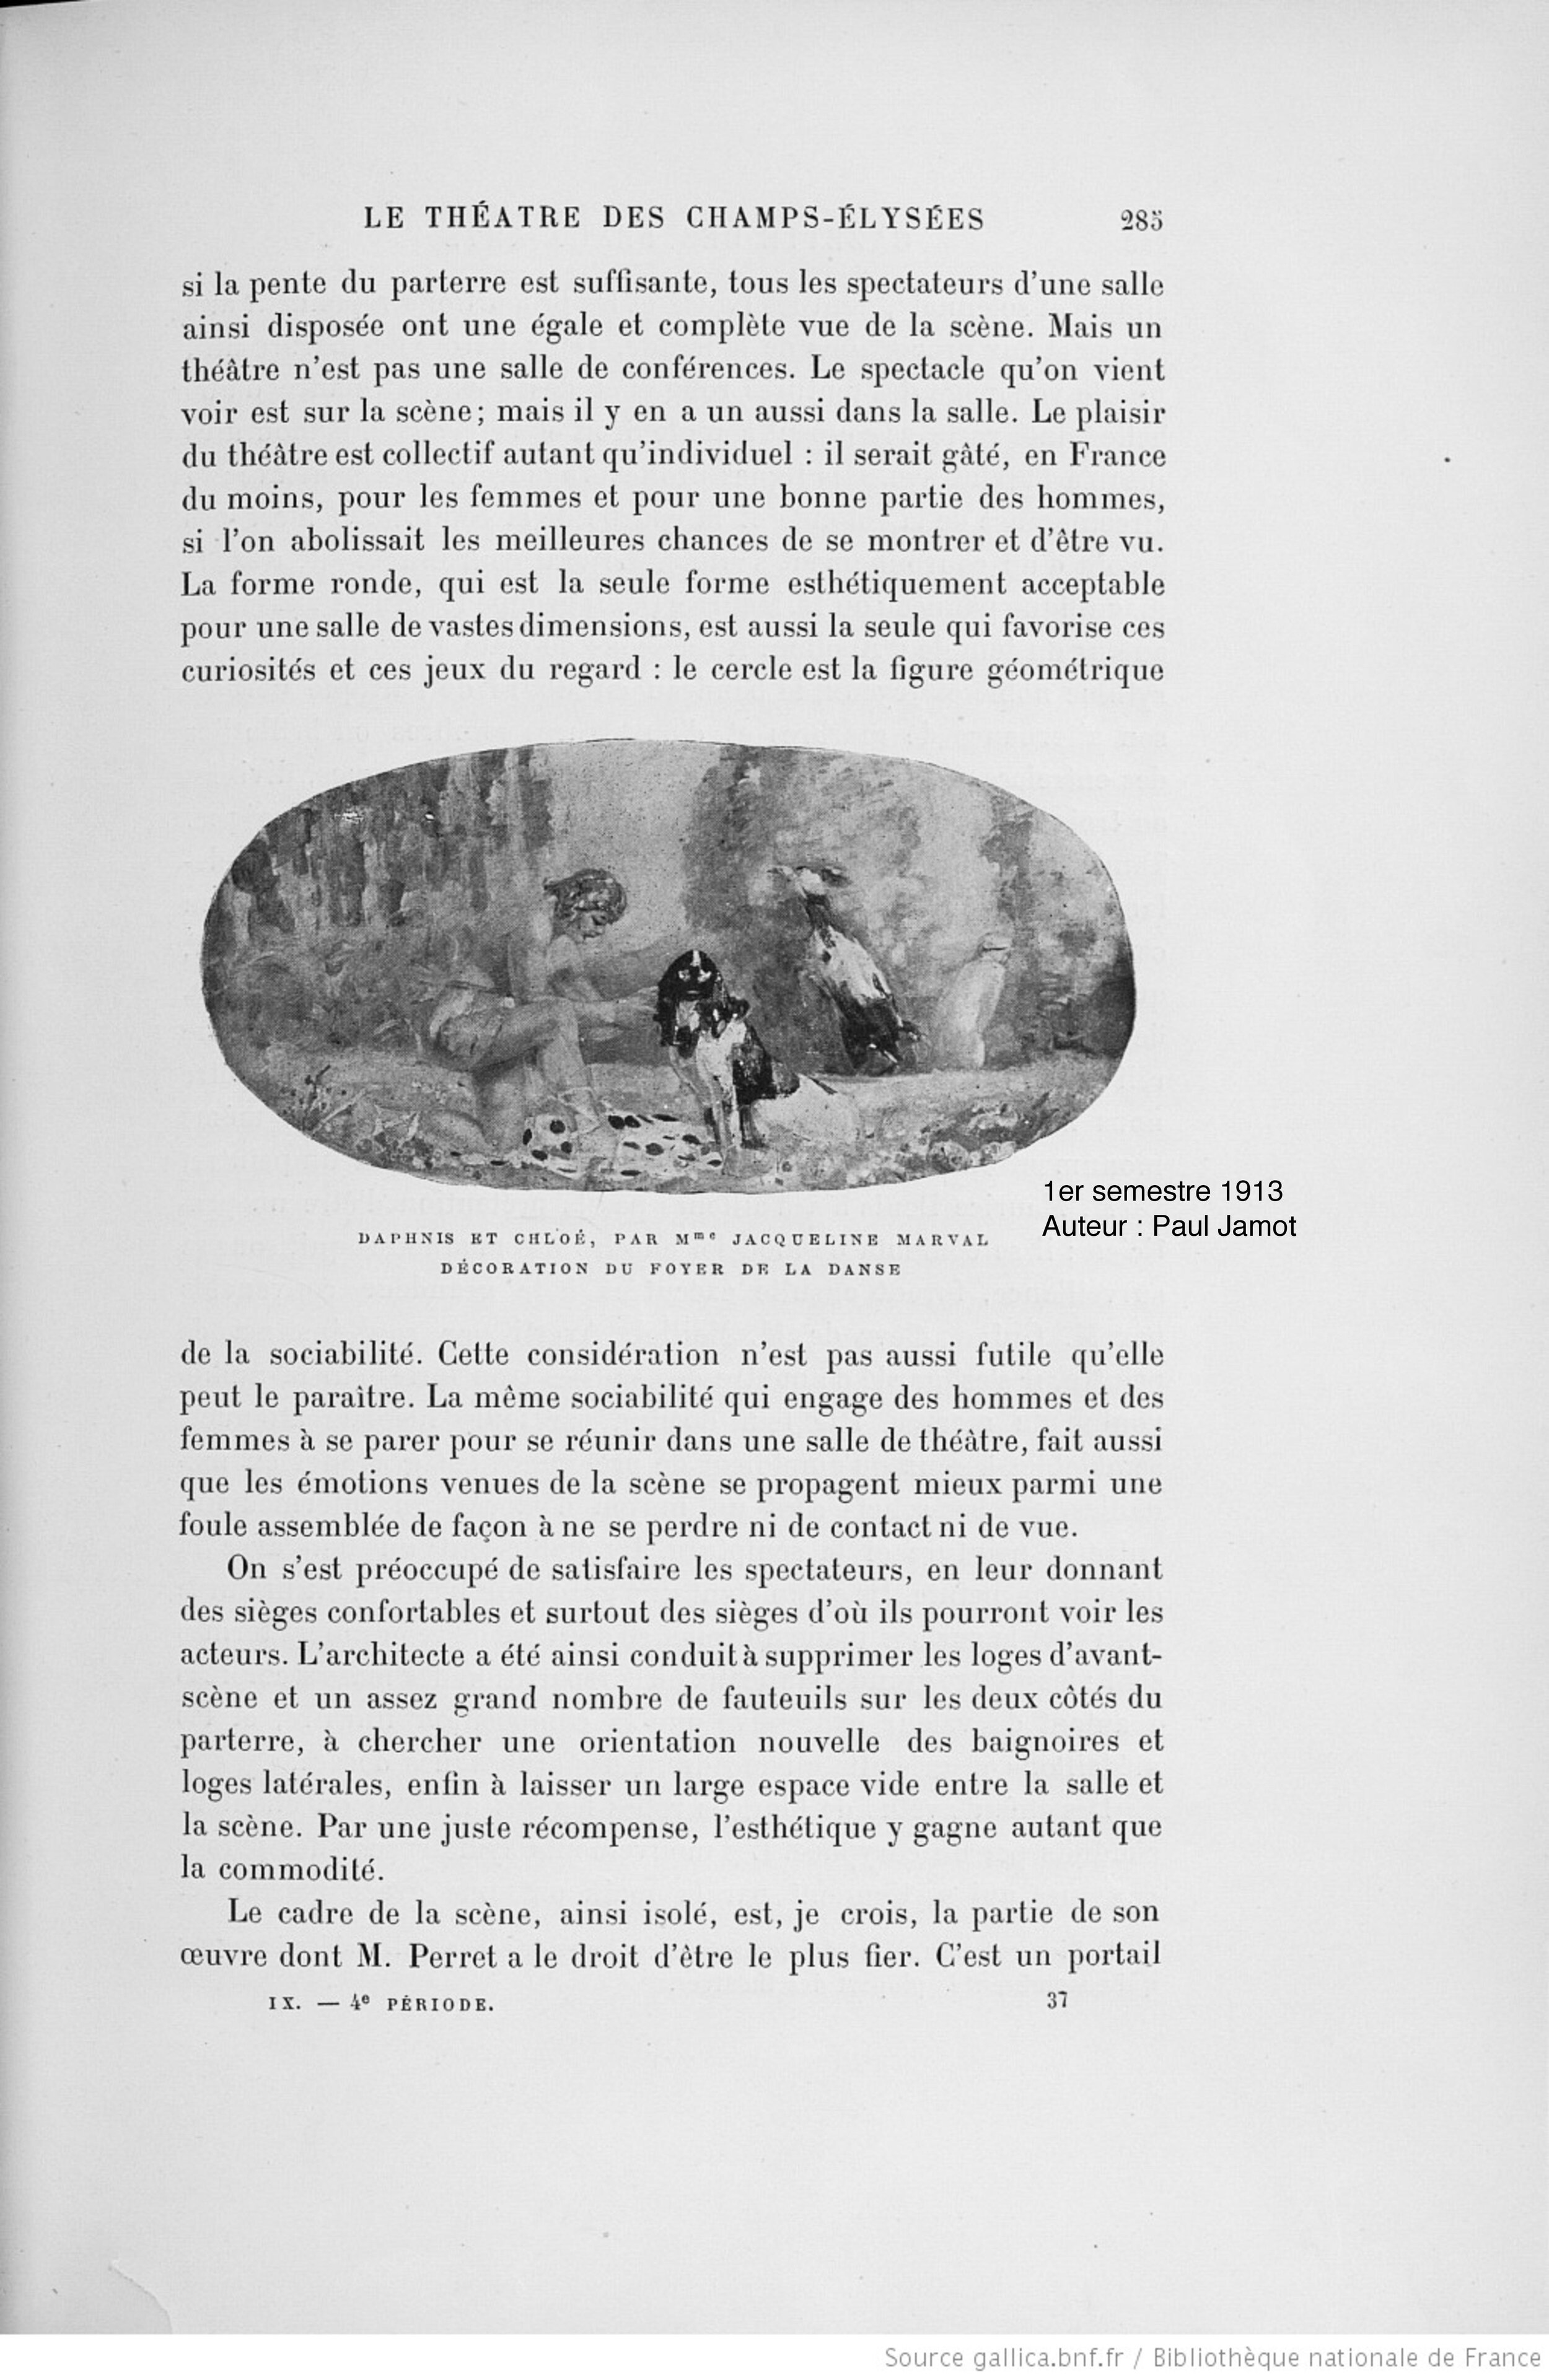 Gazette des Beaux-Arts, 1913 (Copy)